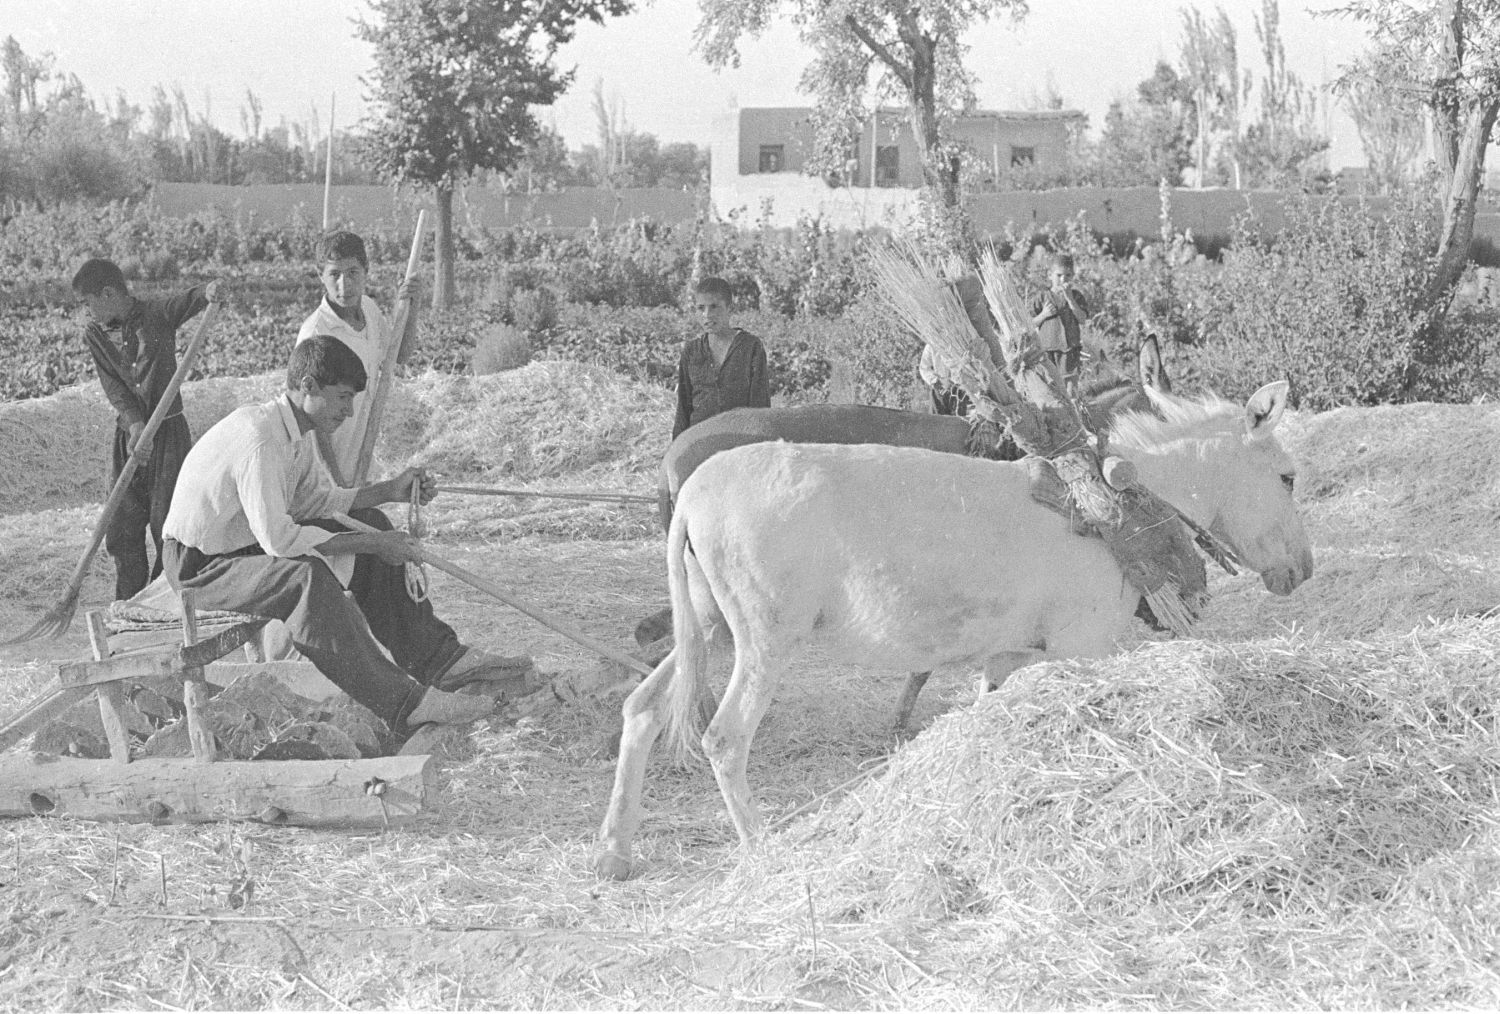 Dennis Briskin - Making hay in Arak, Iran.